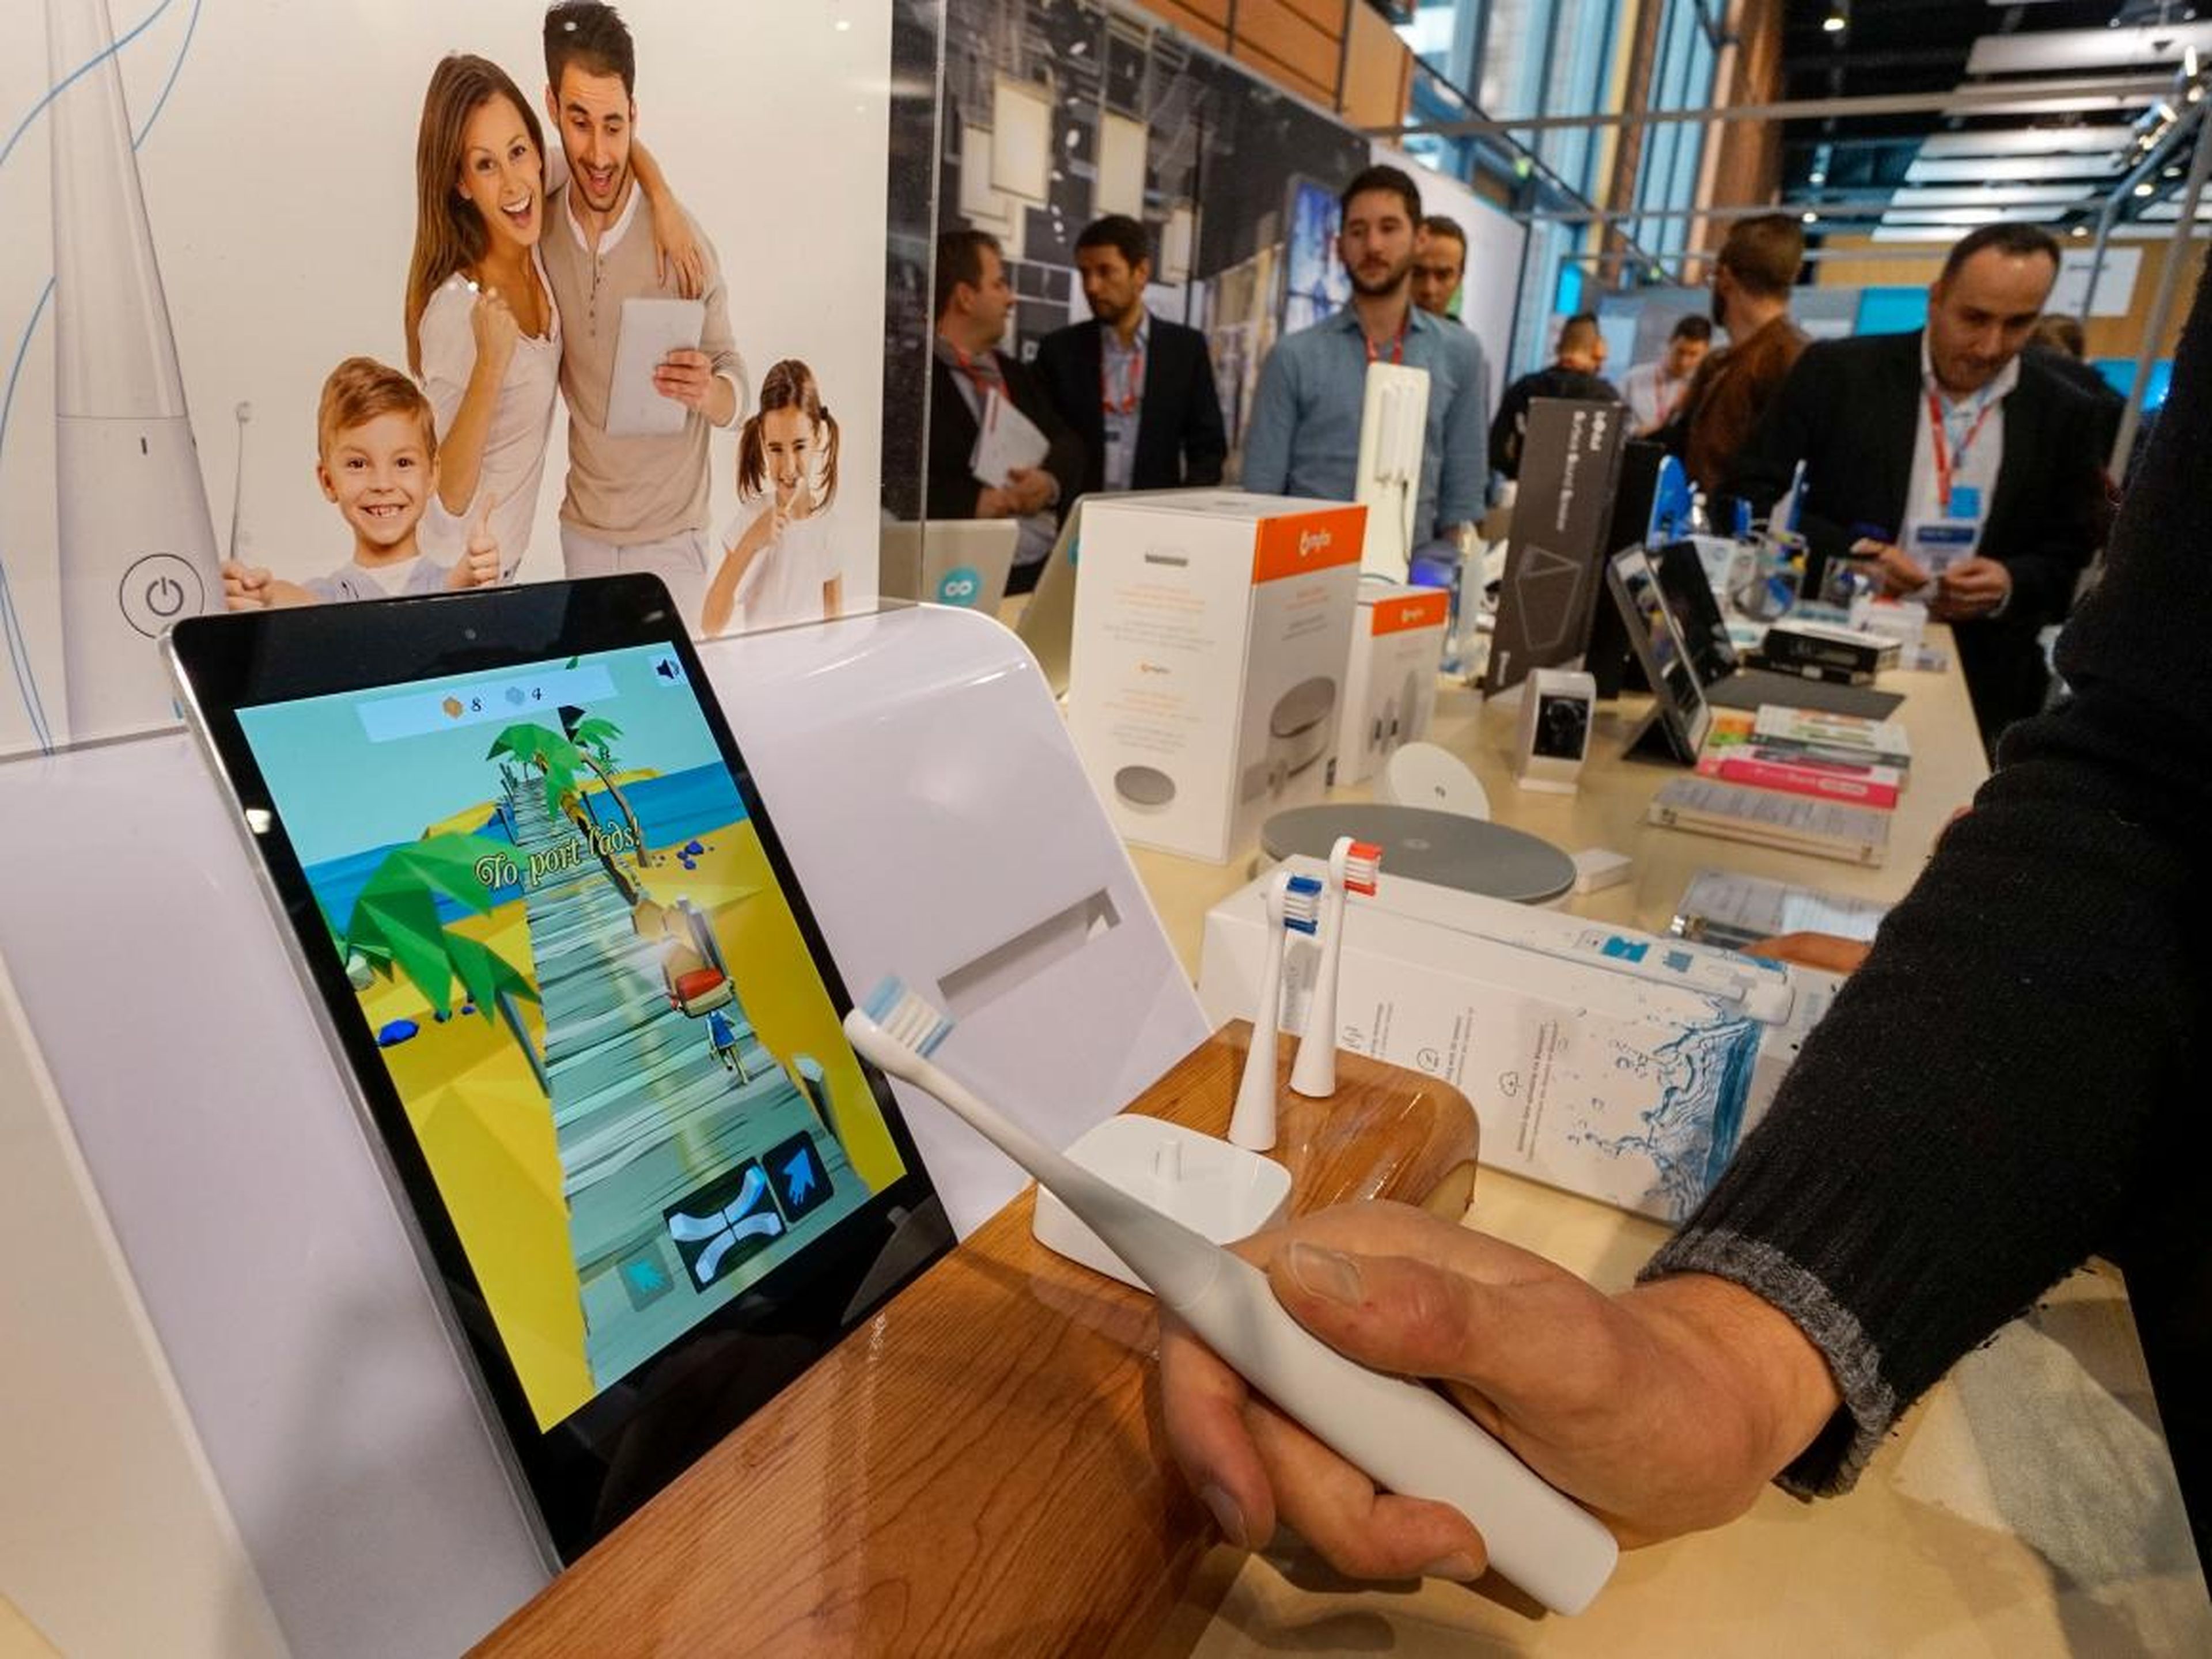 Un hombre sostiene un cepillo de dientes eléctrico conectado a una tablet en la SIdO, la feria comercial Connected Business que se celebró en Lyon el 7 de abril de 2015.